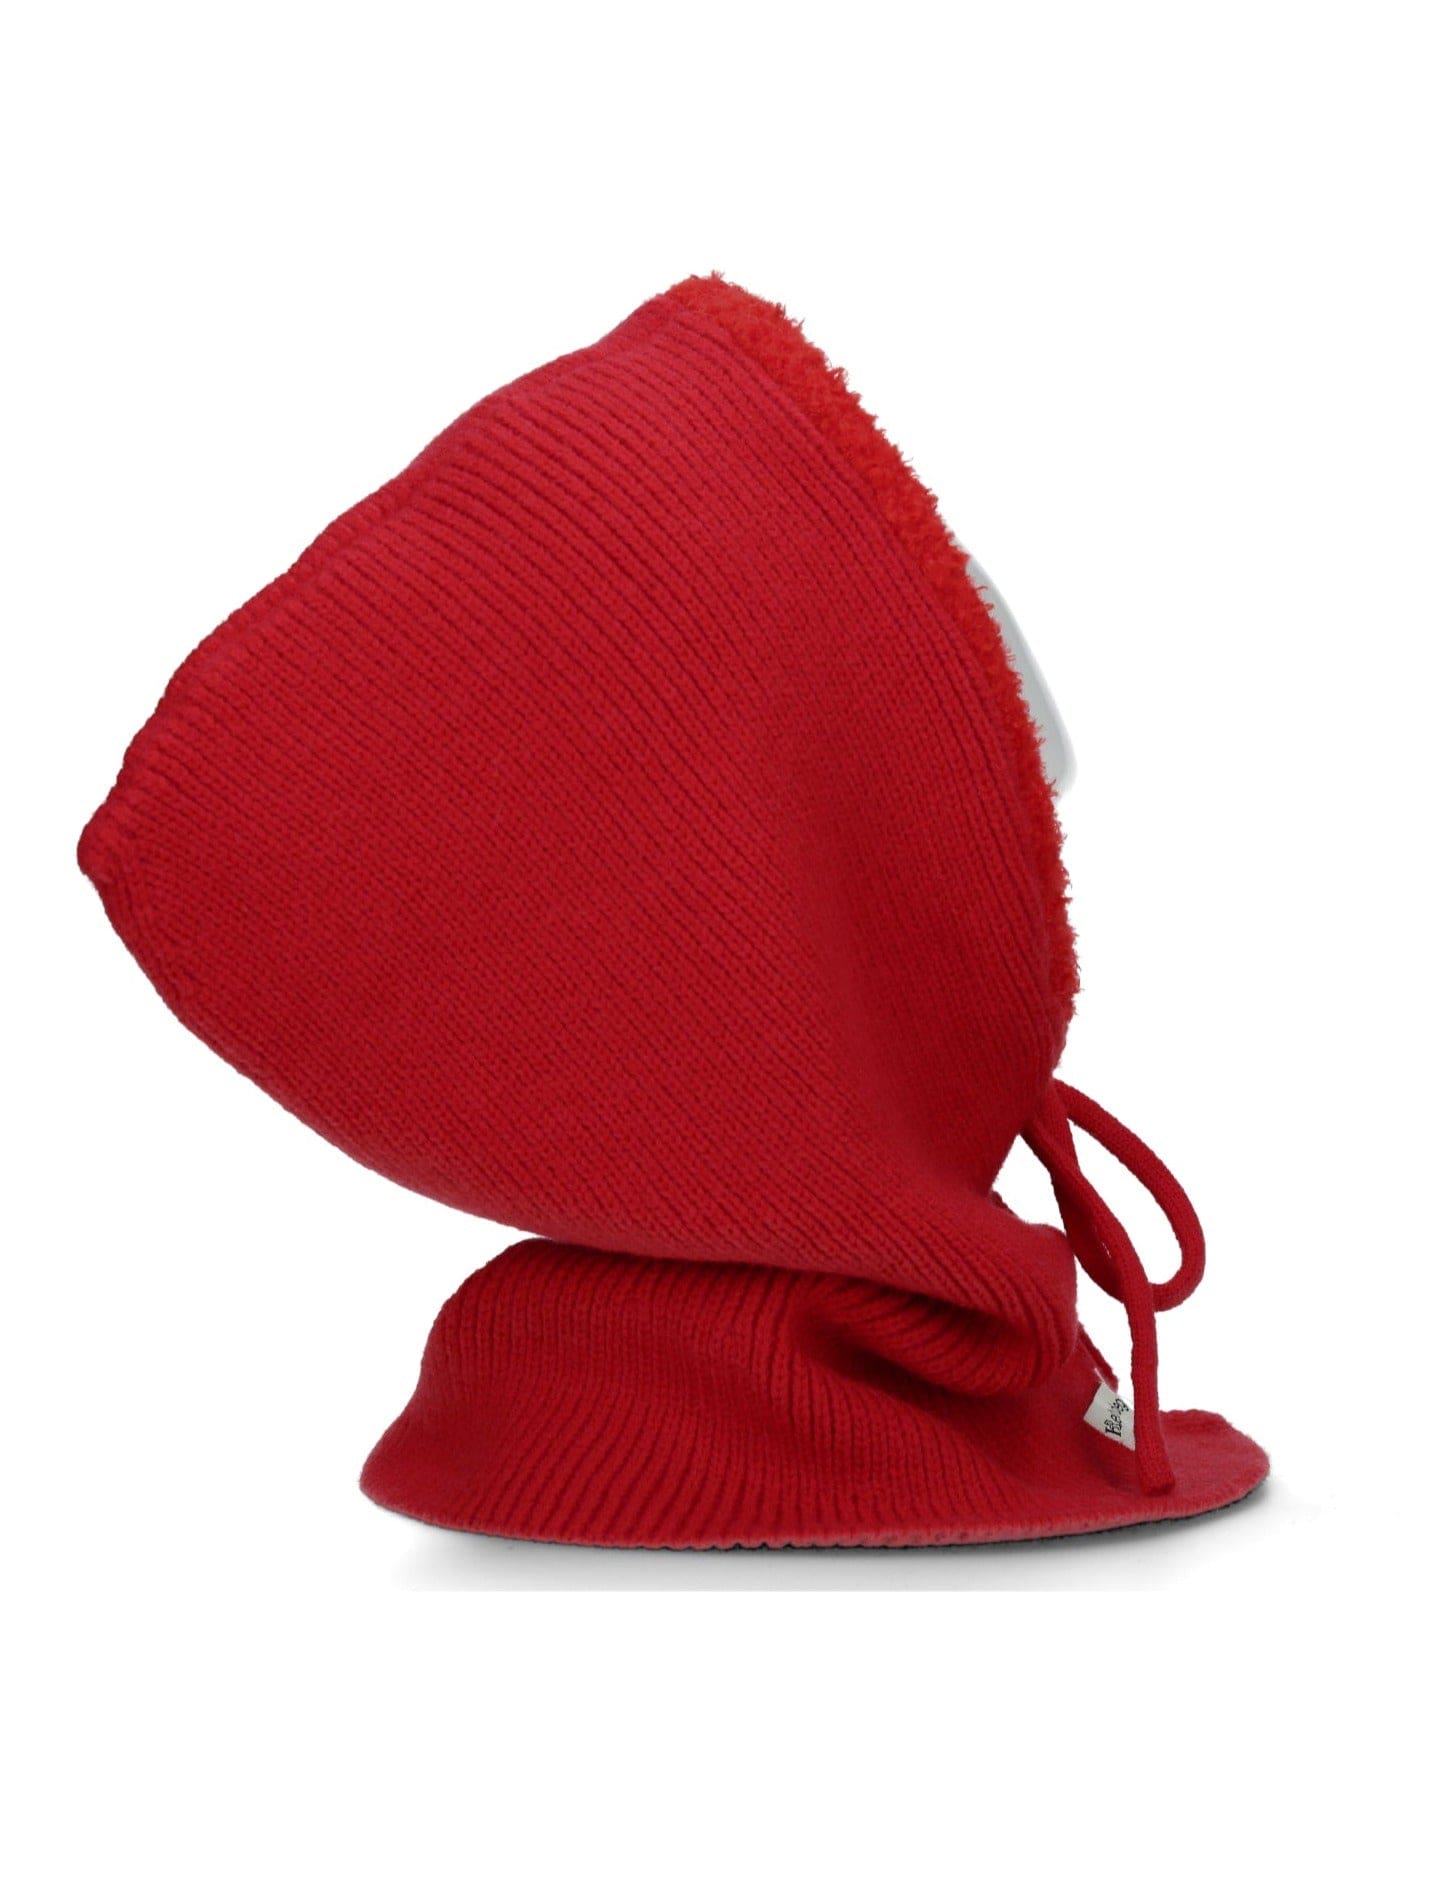 Capuche chaperon rouge - Chapeaux